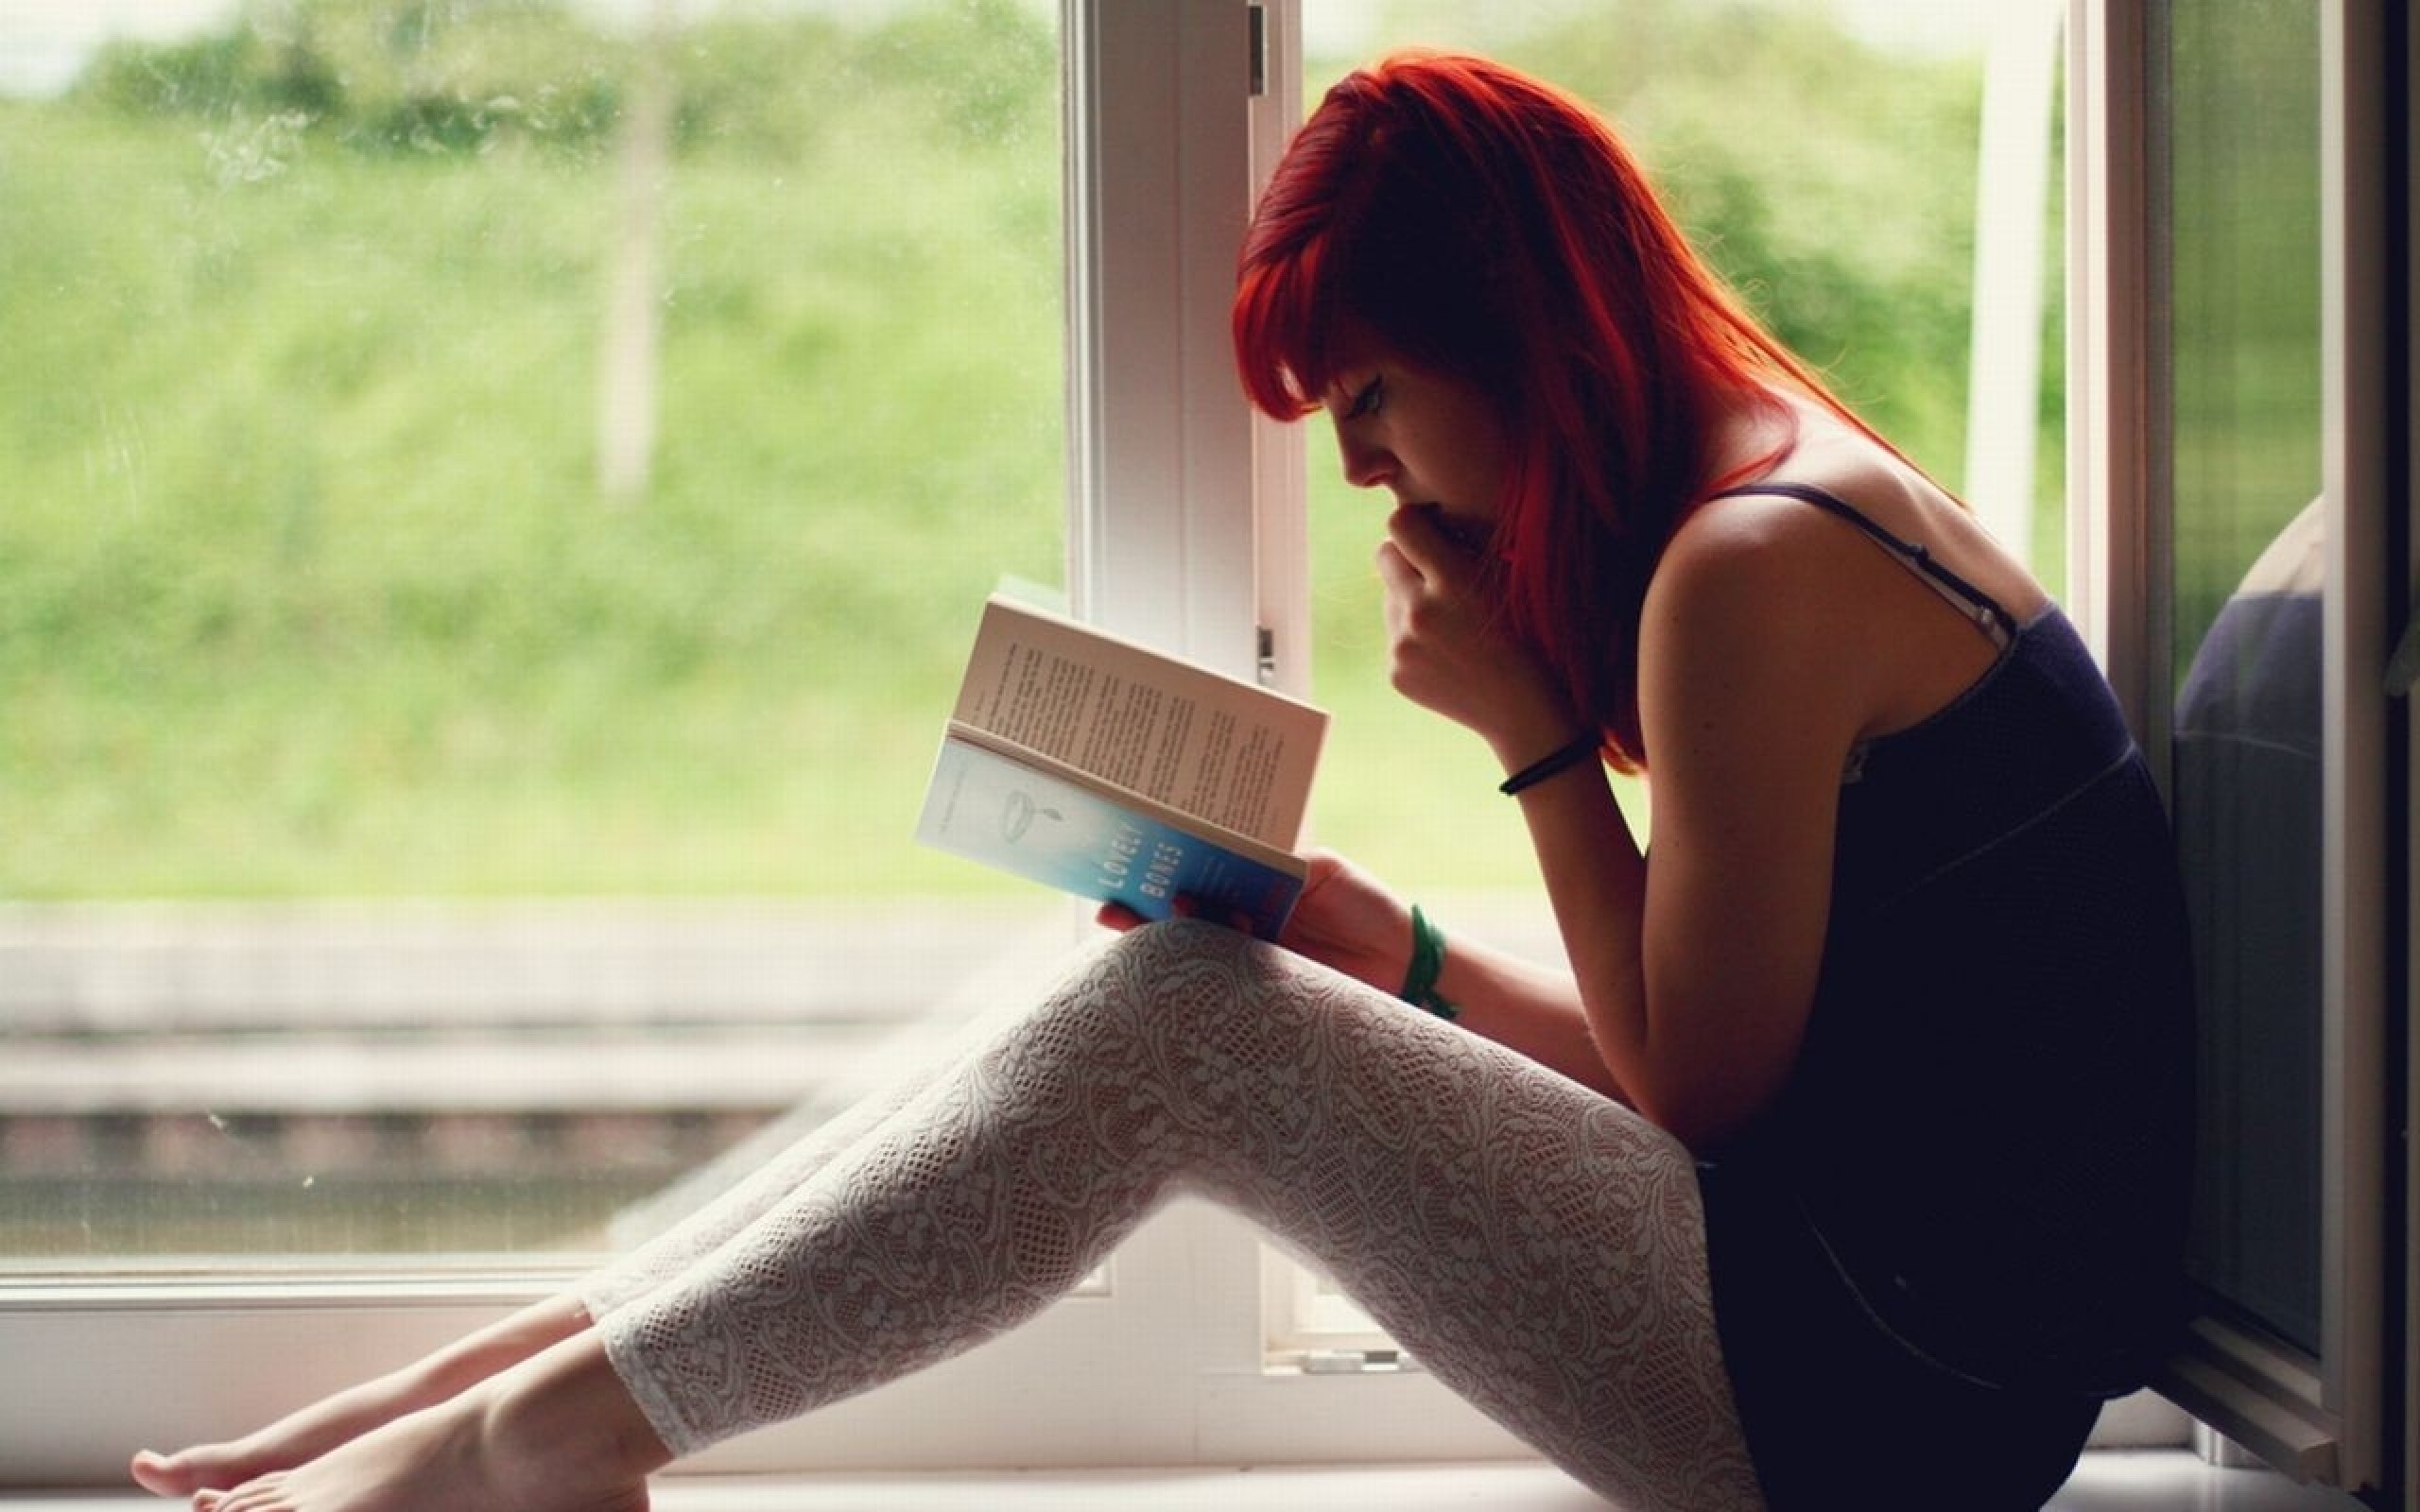 Мужчина много читает. Девушка на подоконнике. Девушка с книжкой на подоконнике. Девушка с книгой. Рыжая девушка у окна.